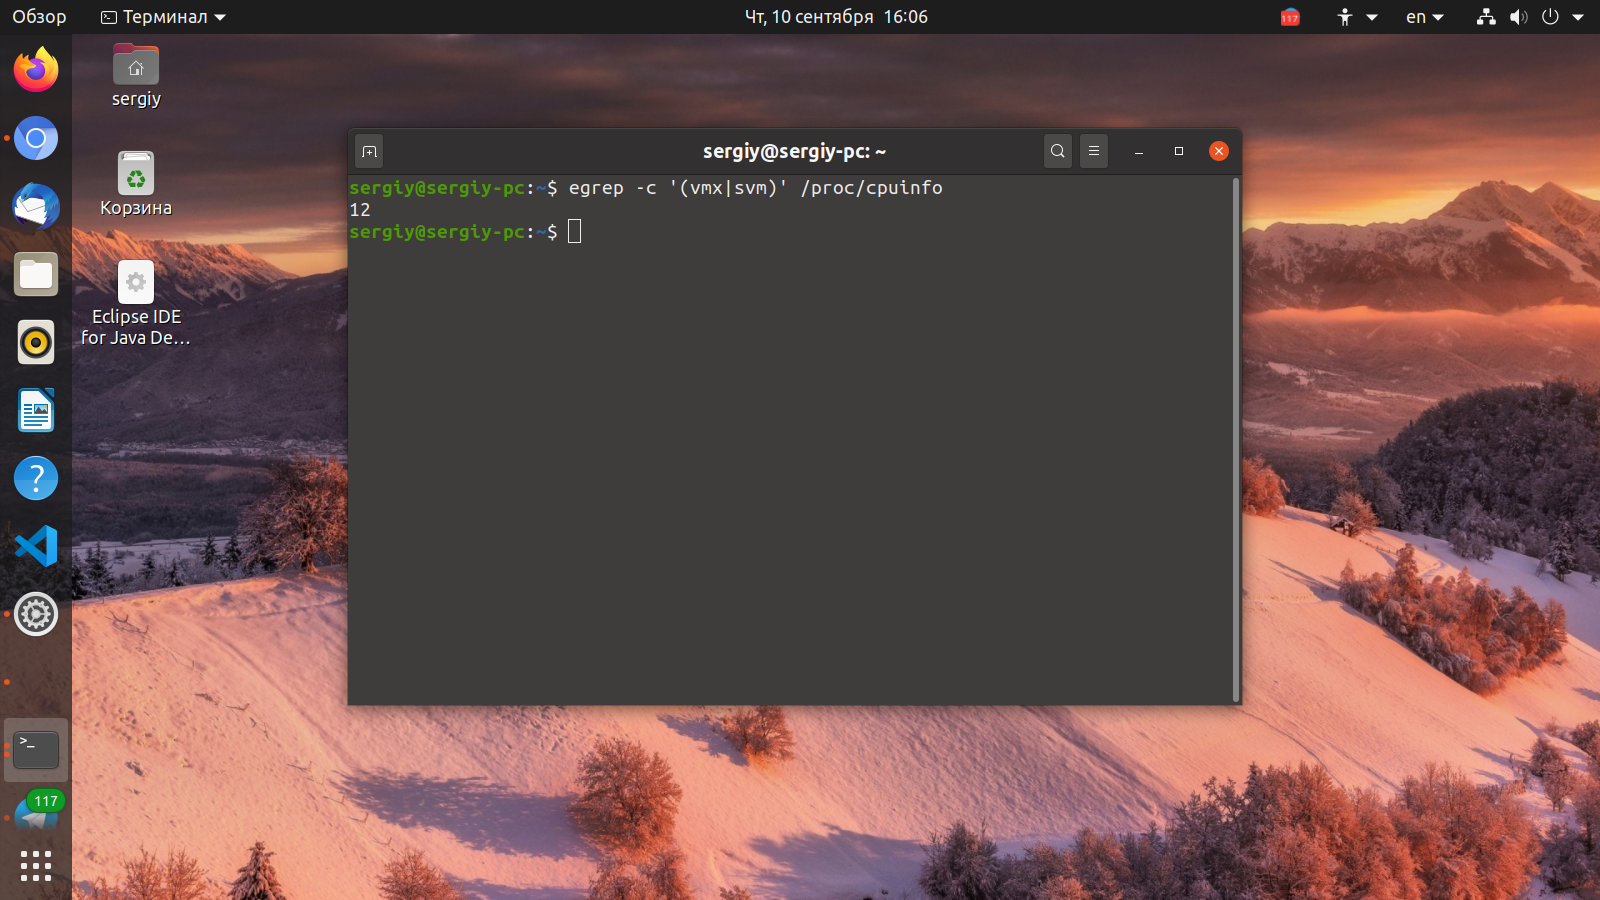 Temp linux. Операционная система Ubuntu Linux Server 18.04. Ubuntu Server графическая оболочка. Linux Ubuntu 16.04 ядро. Оболочка zsh.